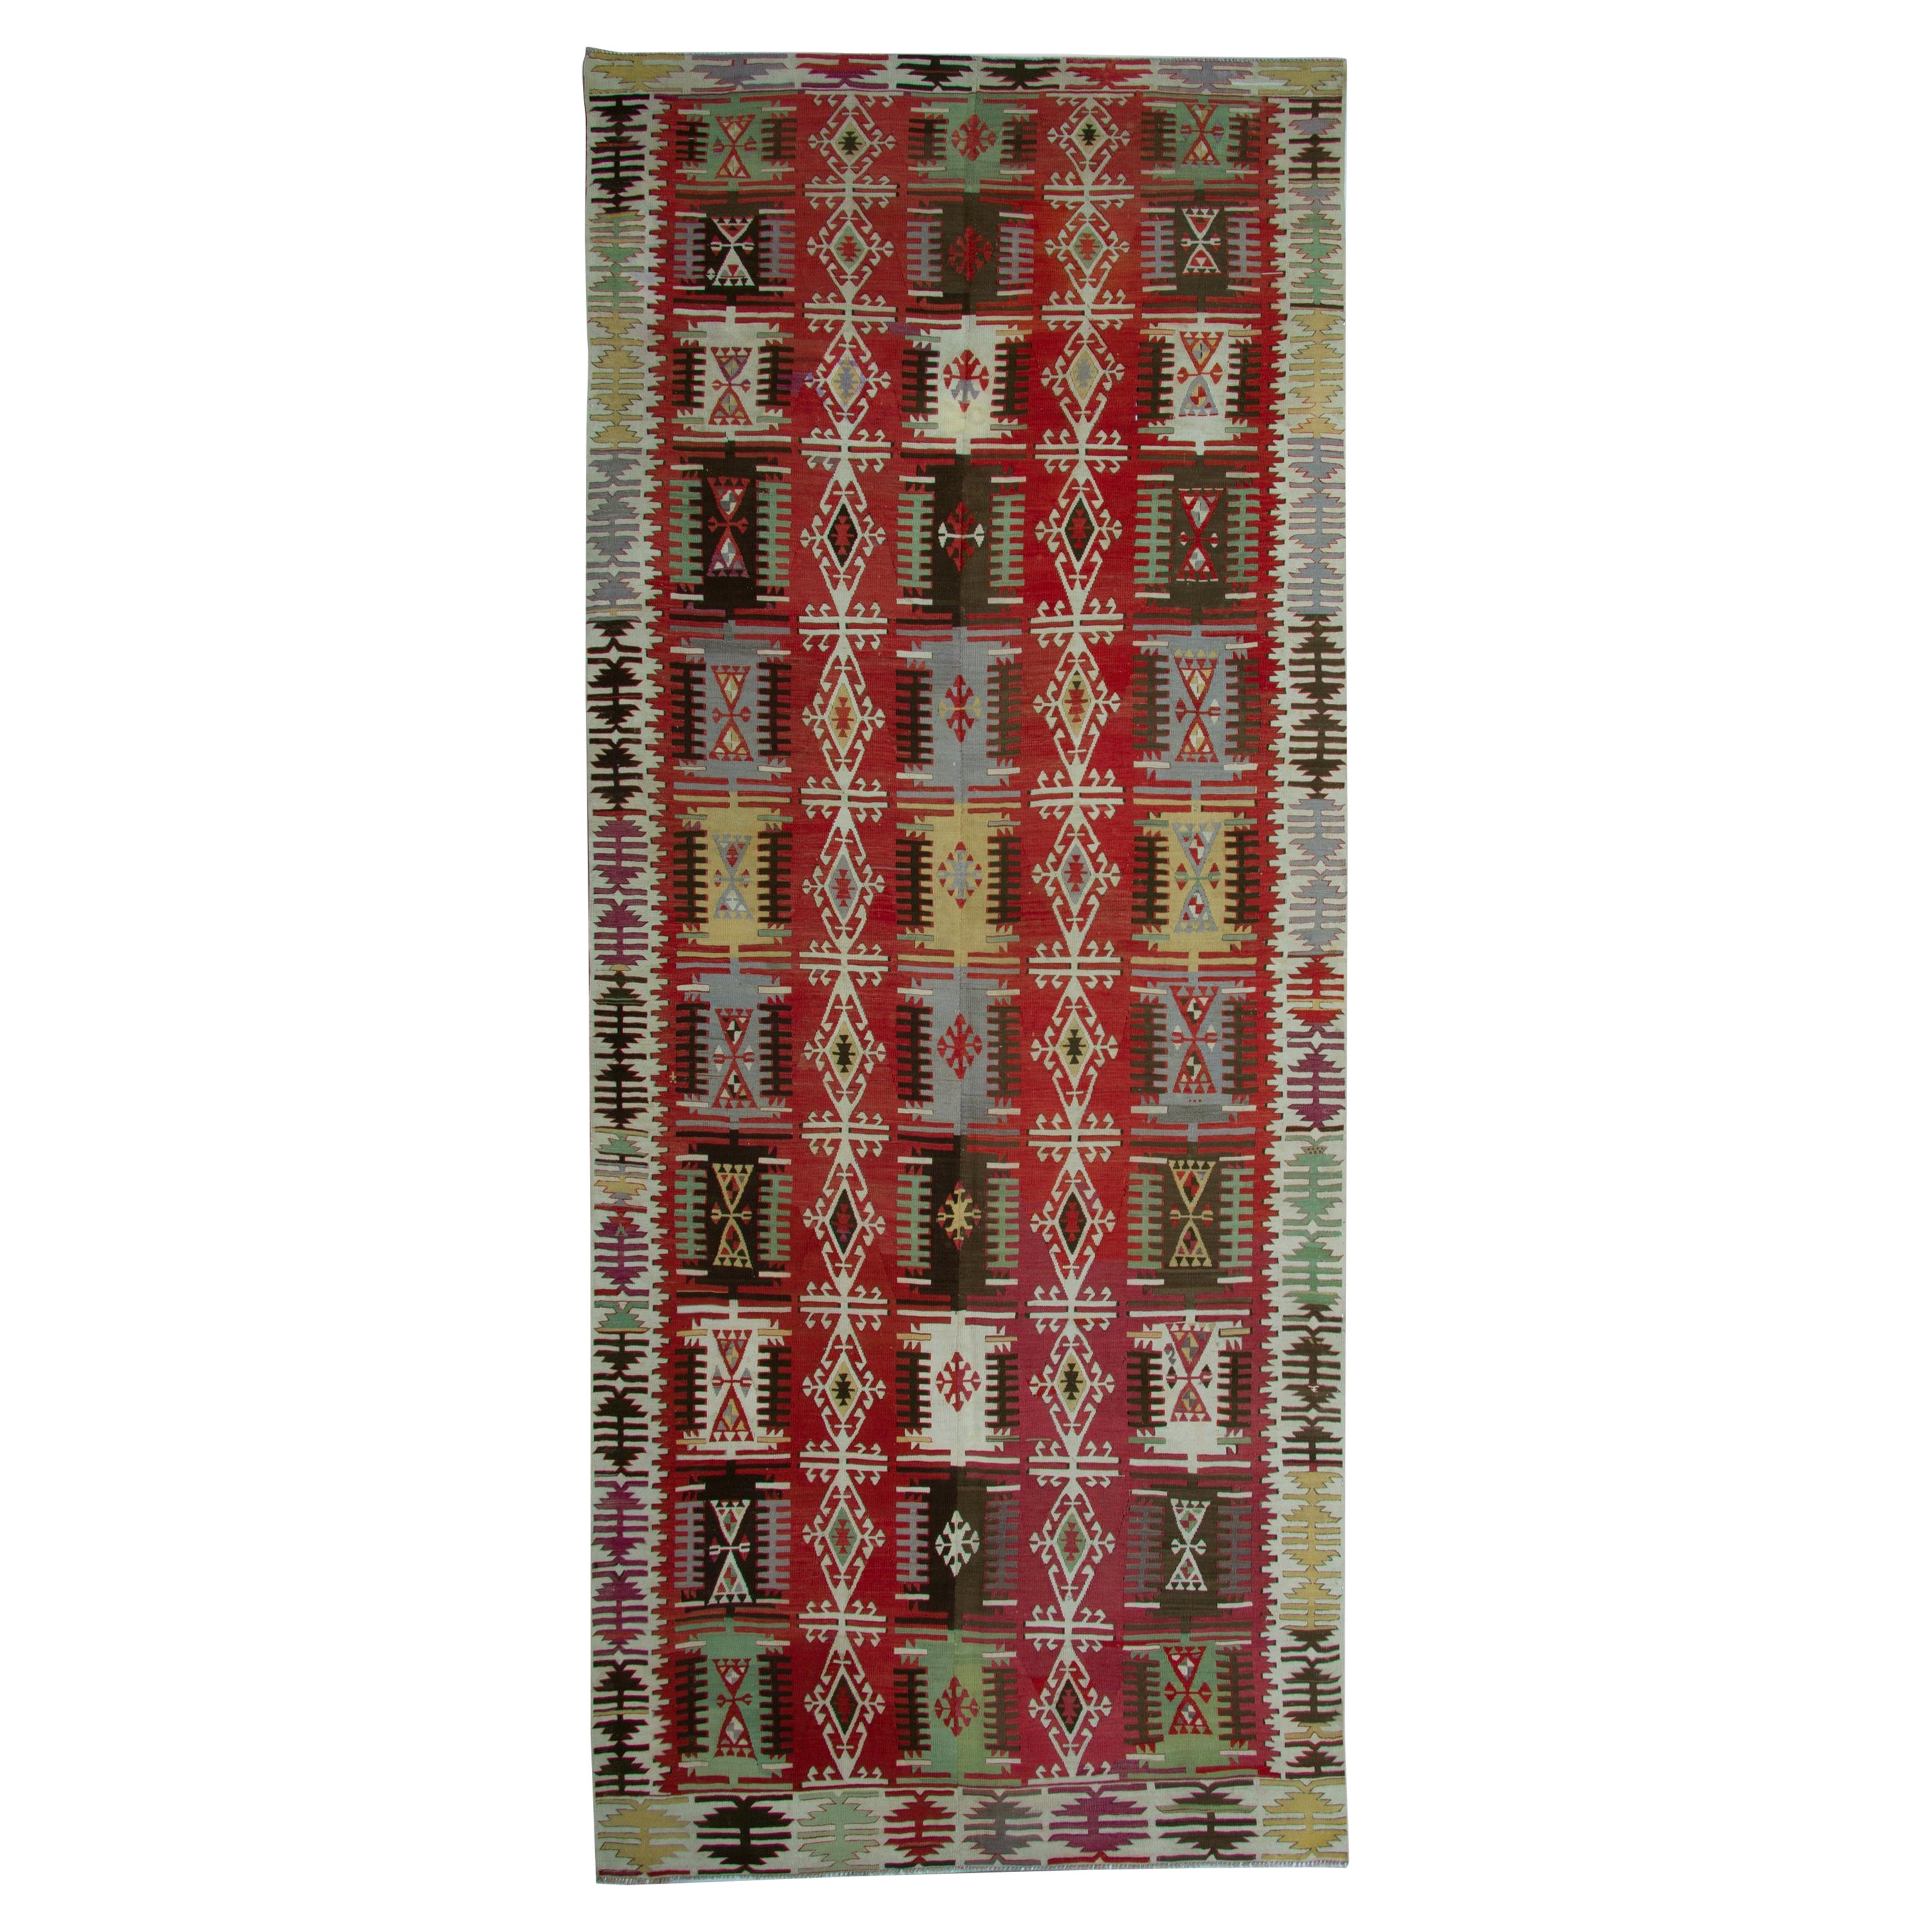 Handgefertigte Kelim-Teppiche, orientalische Teppiche aus der Türkei, türkische Teppiche zum Verkauf